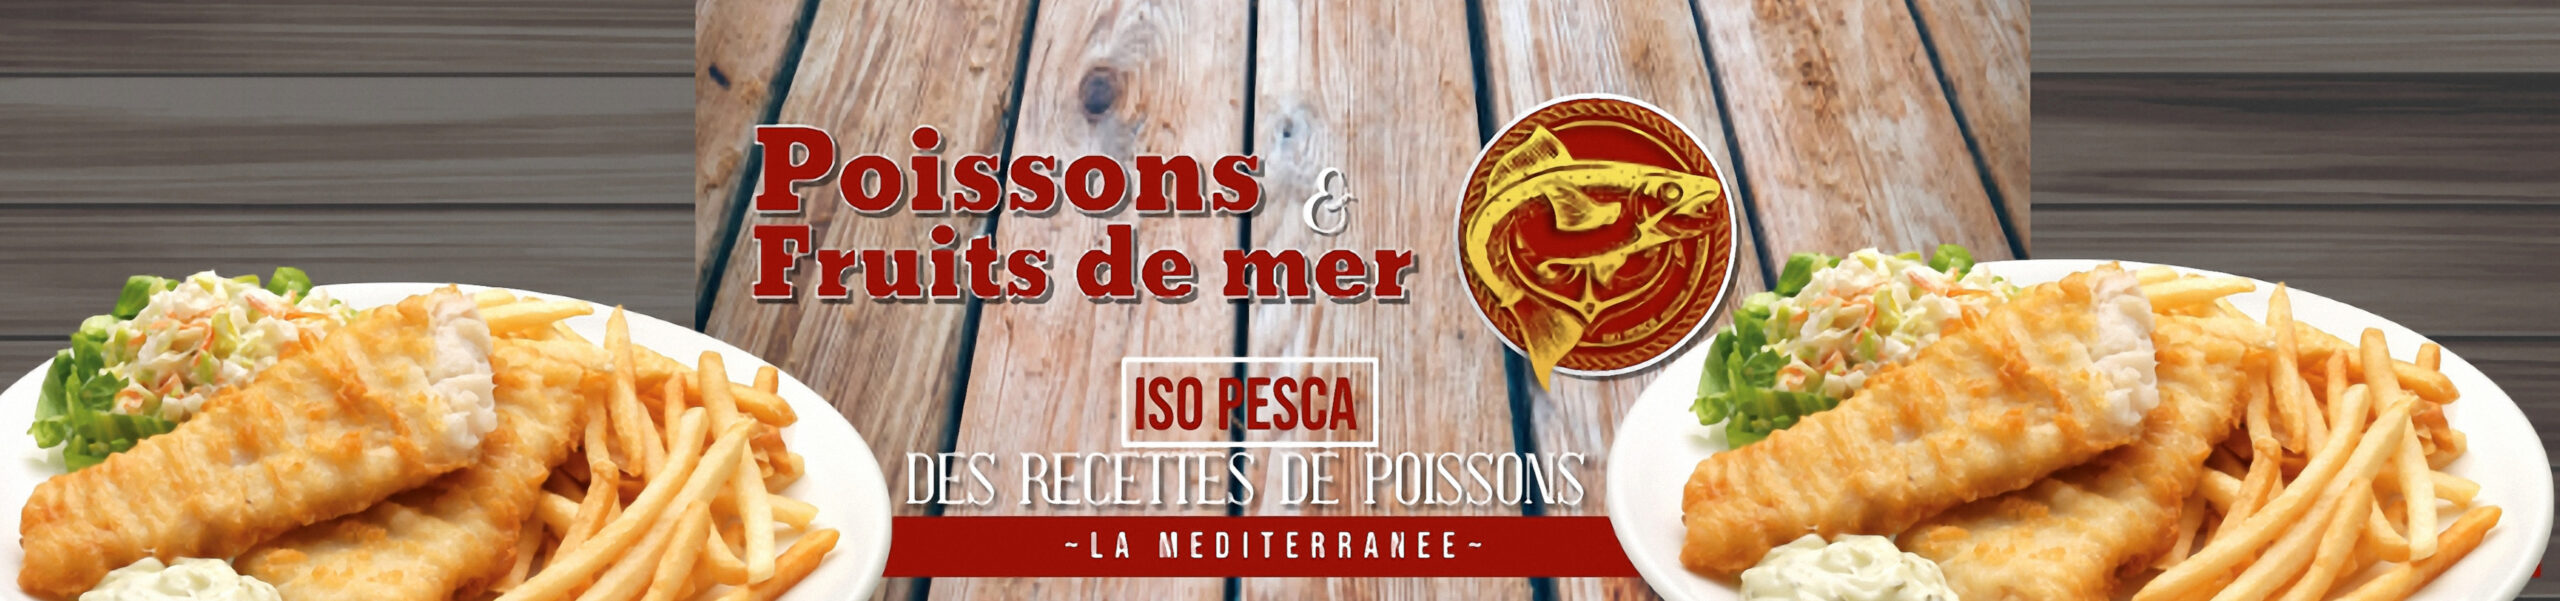 Recettes de poissons - Realiser de bons plats - ISO PESCA Grossiste poissons et fruits de mer - 1070 Bruxelles BELGIQUE